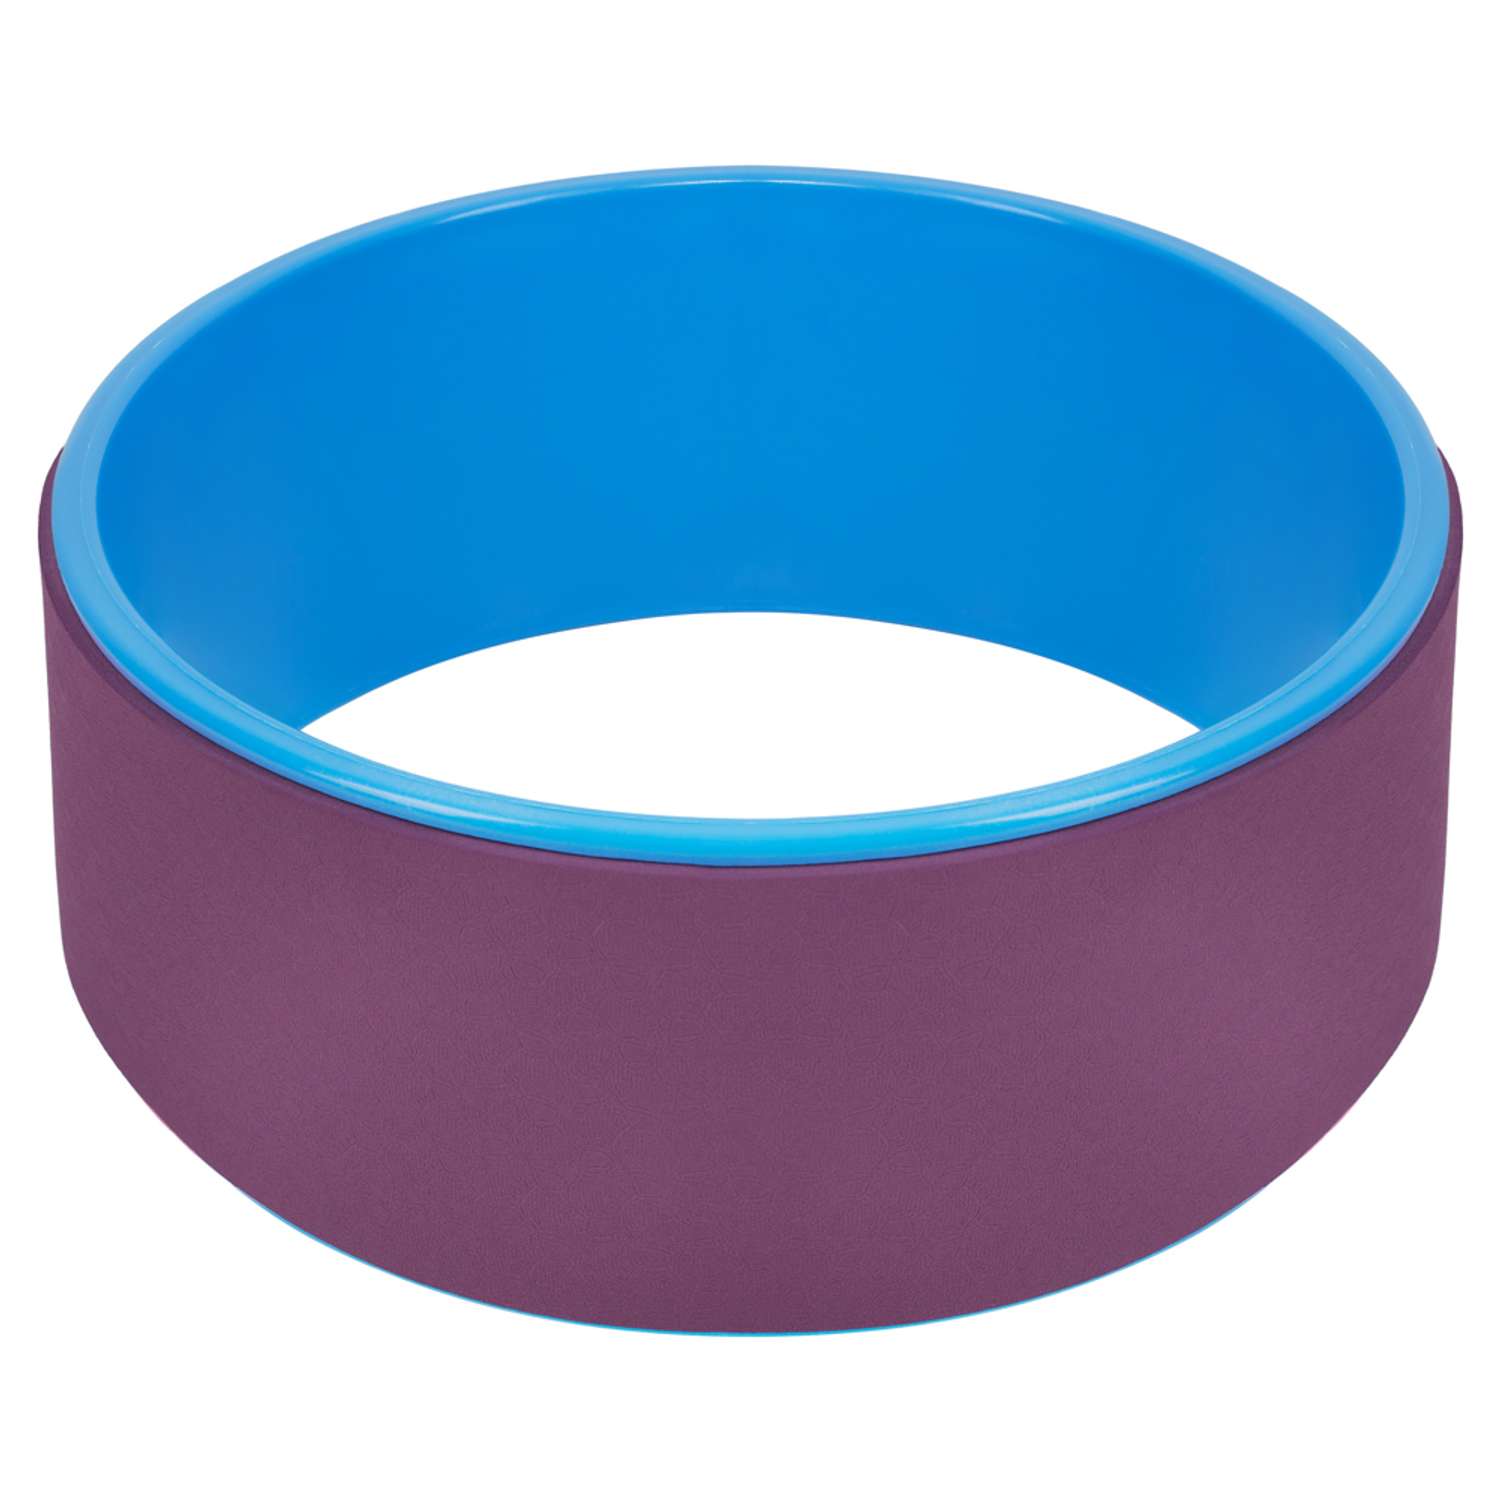 Колесо для йоги STRONG BODY фитнеса и пилатес 30 см х 12 см пурпурно-синее - фото 3